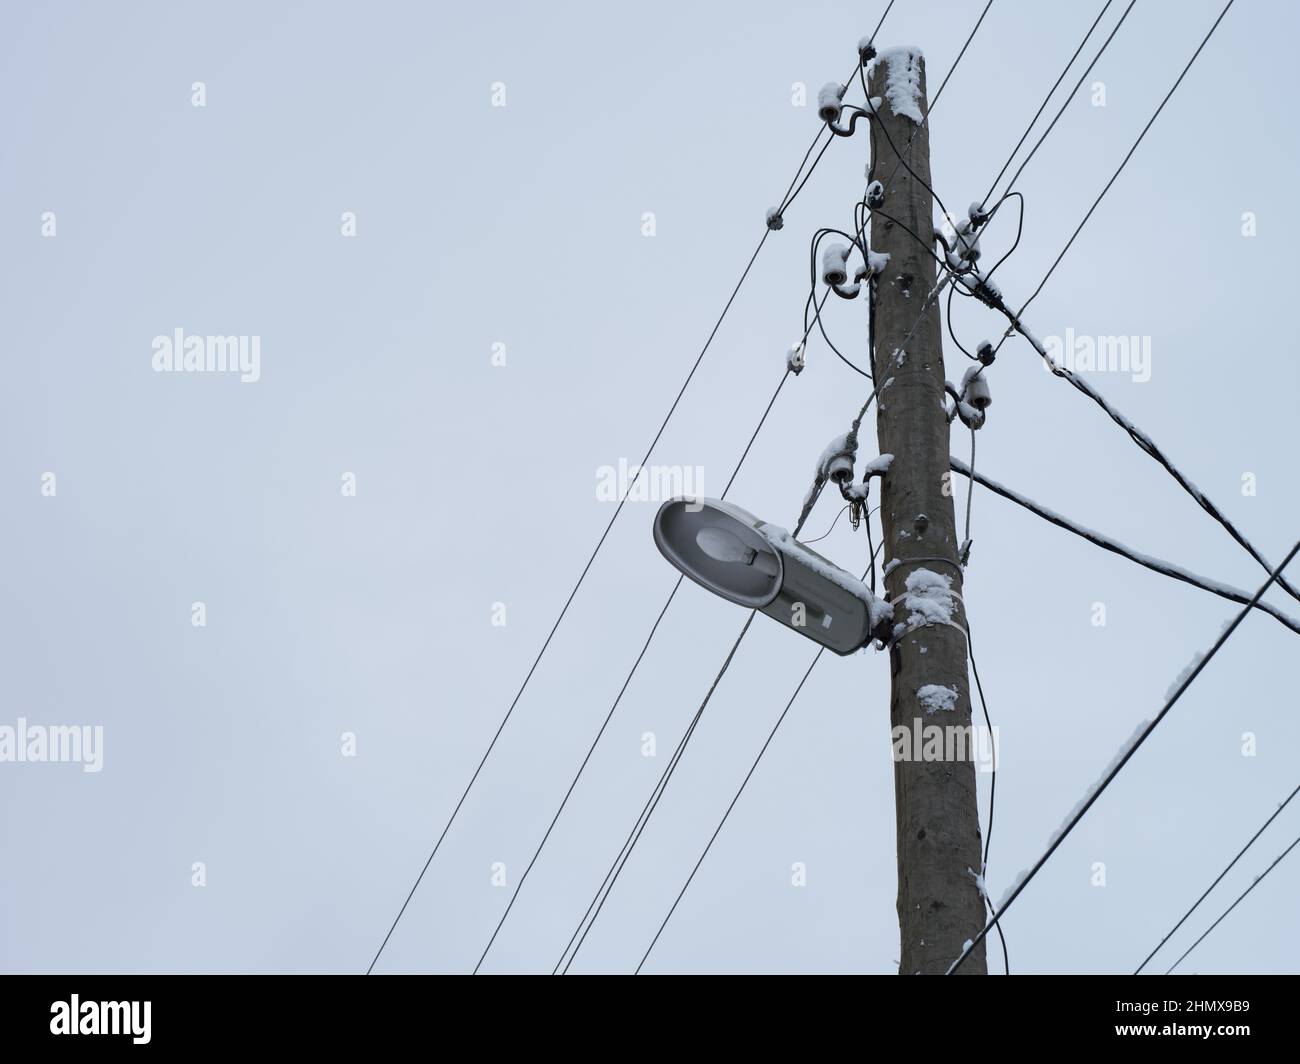 Un vecchio palo di legno elettrico con una lampada e cavi elettrici appesi su di esso e un po' di neve su di esso. Primo piano. Foto Stock